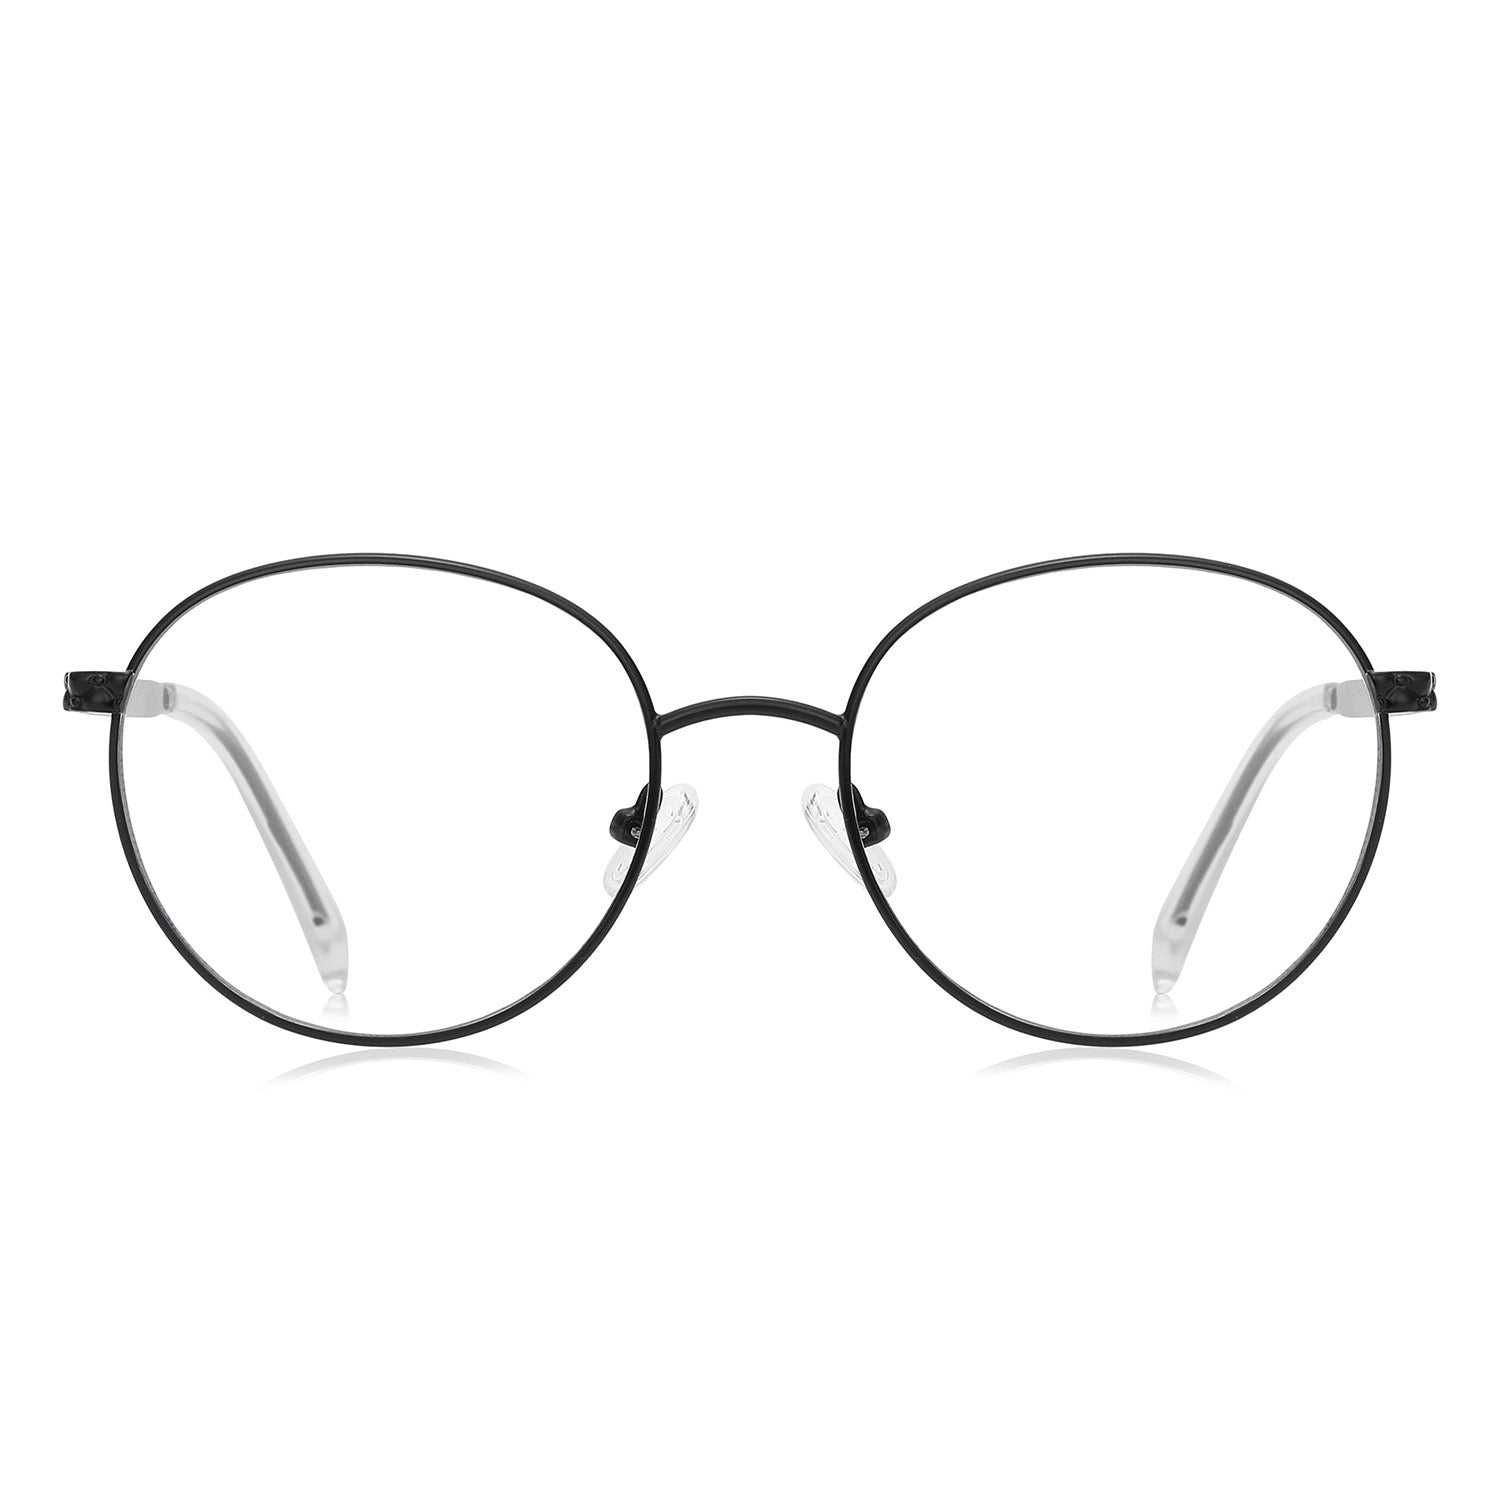 Dark | Round/Black/Metal - Eyeglasses | ELKLOOK